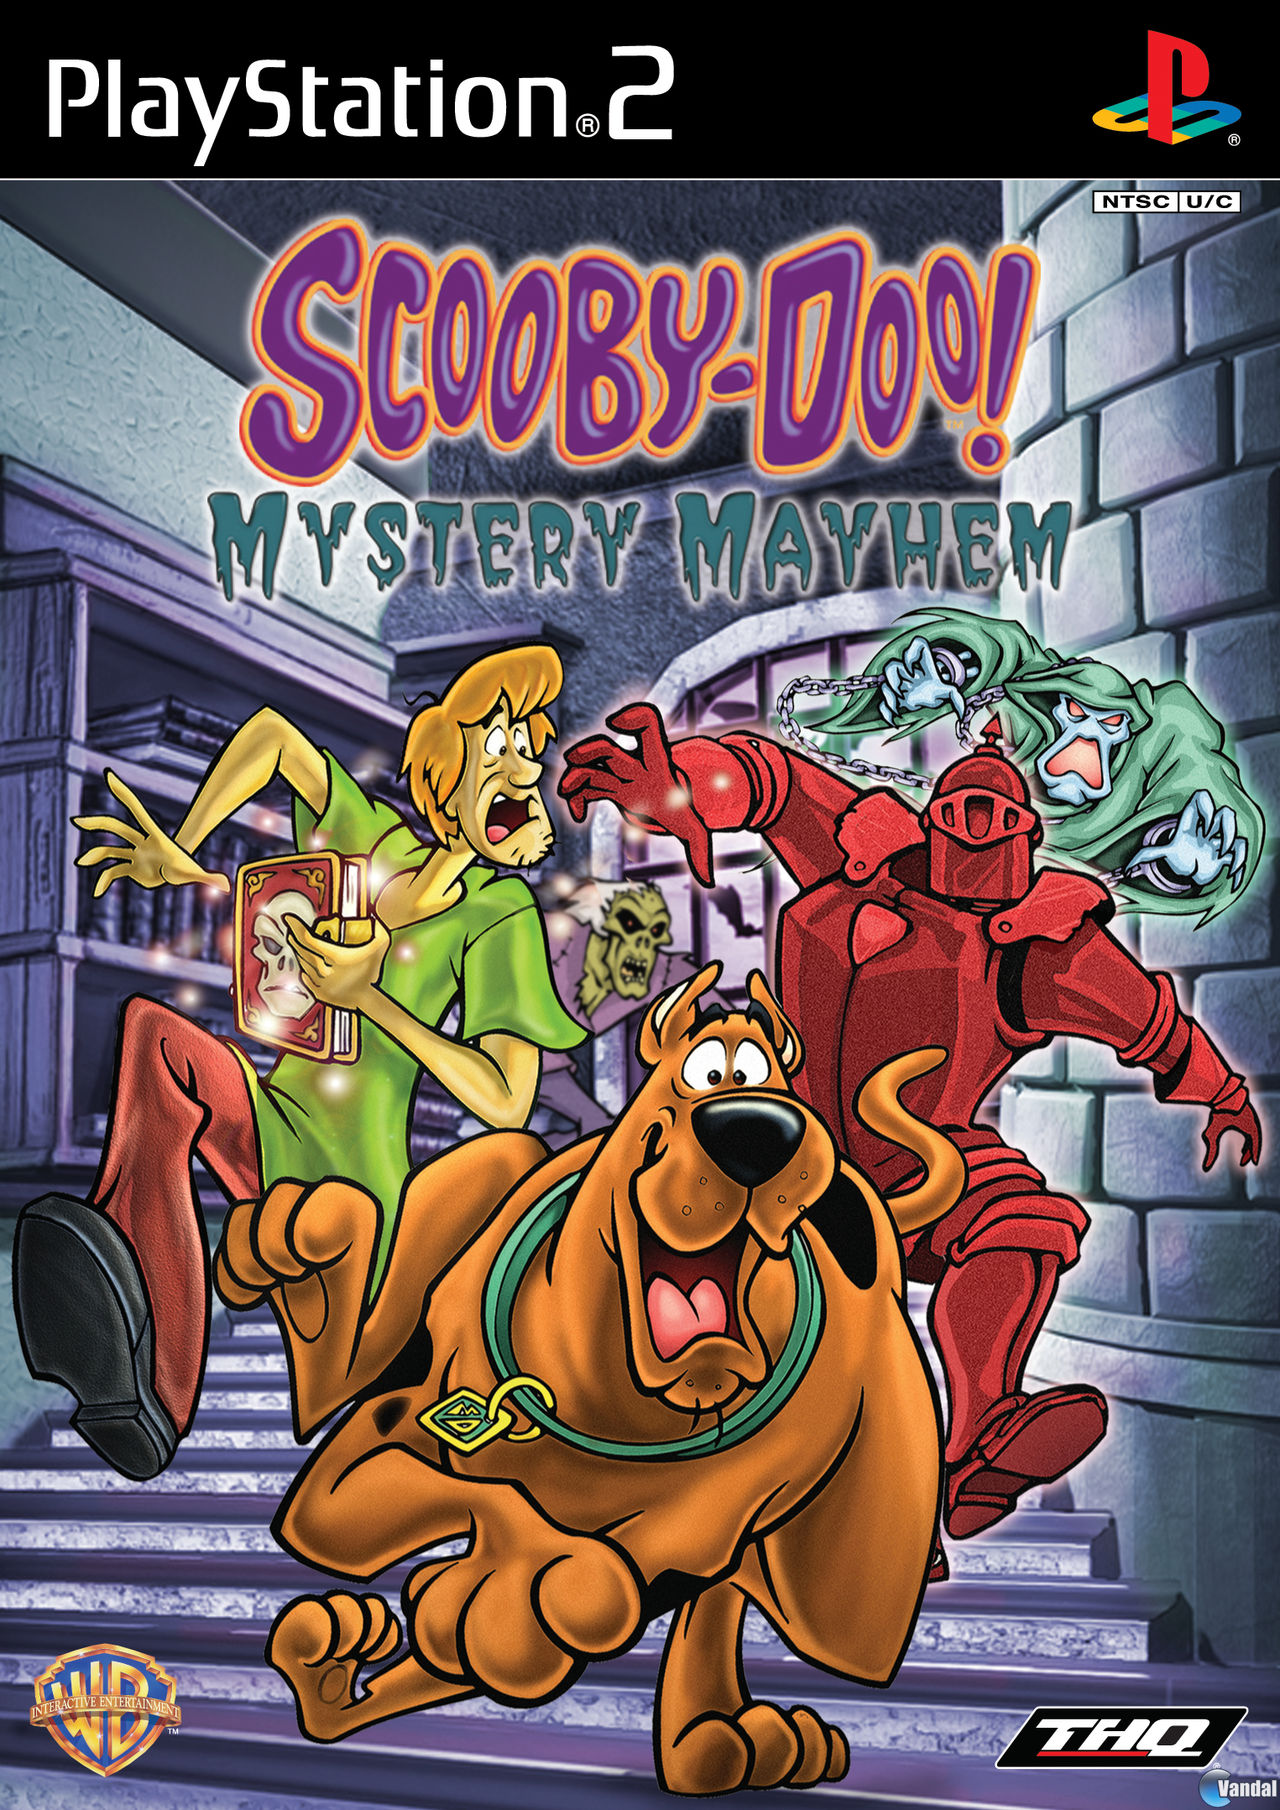 Scooby Doo! El Misterioso Alboroto - Videojuego (PS2, Xbox, GameCube y Boy Advance) - Vandal